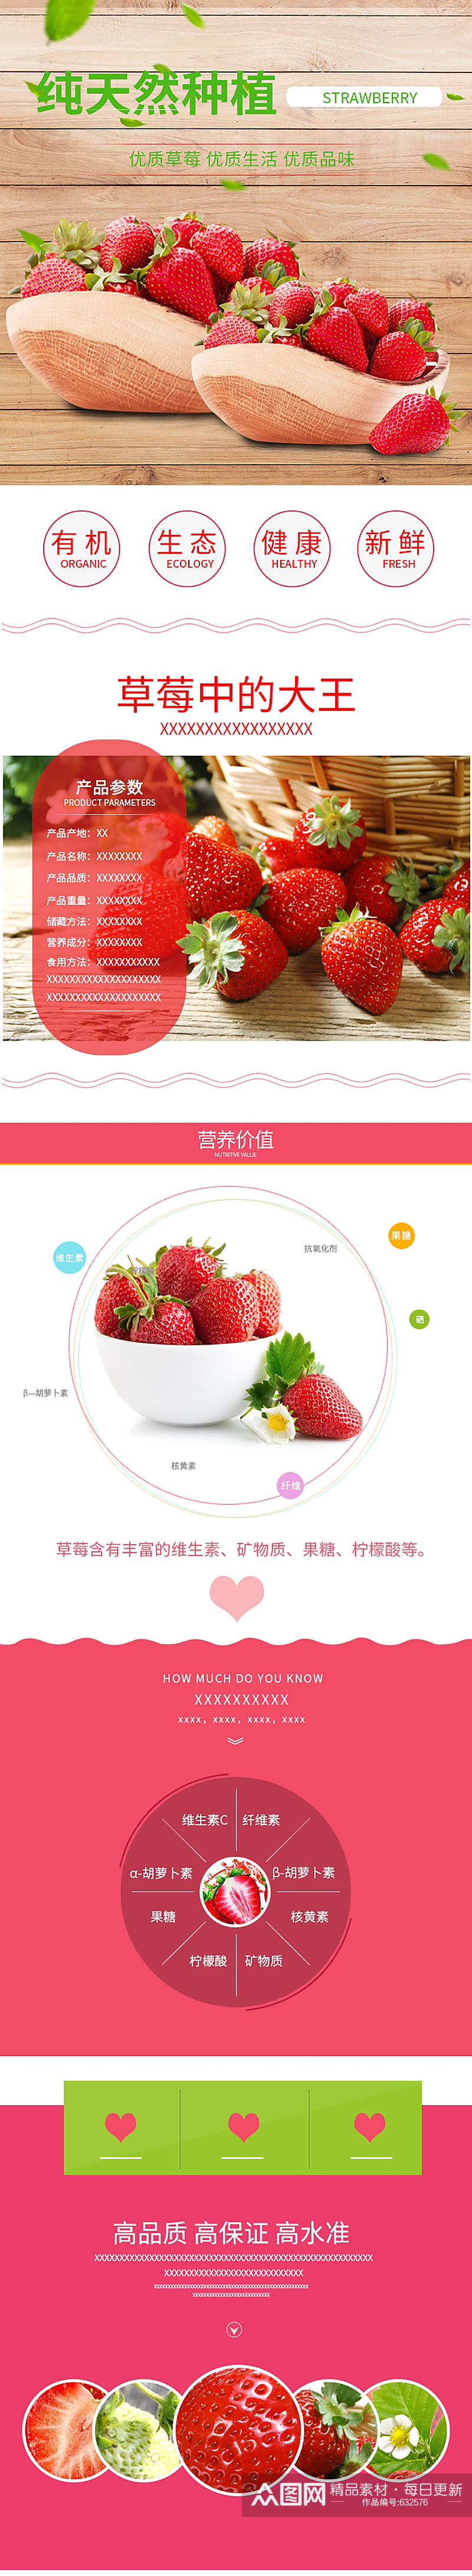 纯天然种植草莓详情页素材